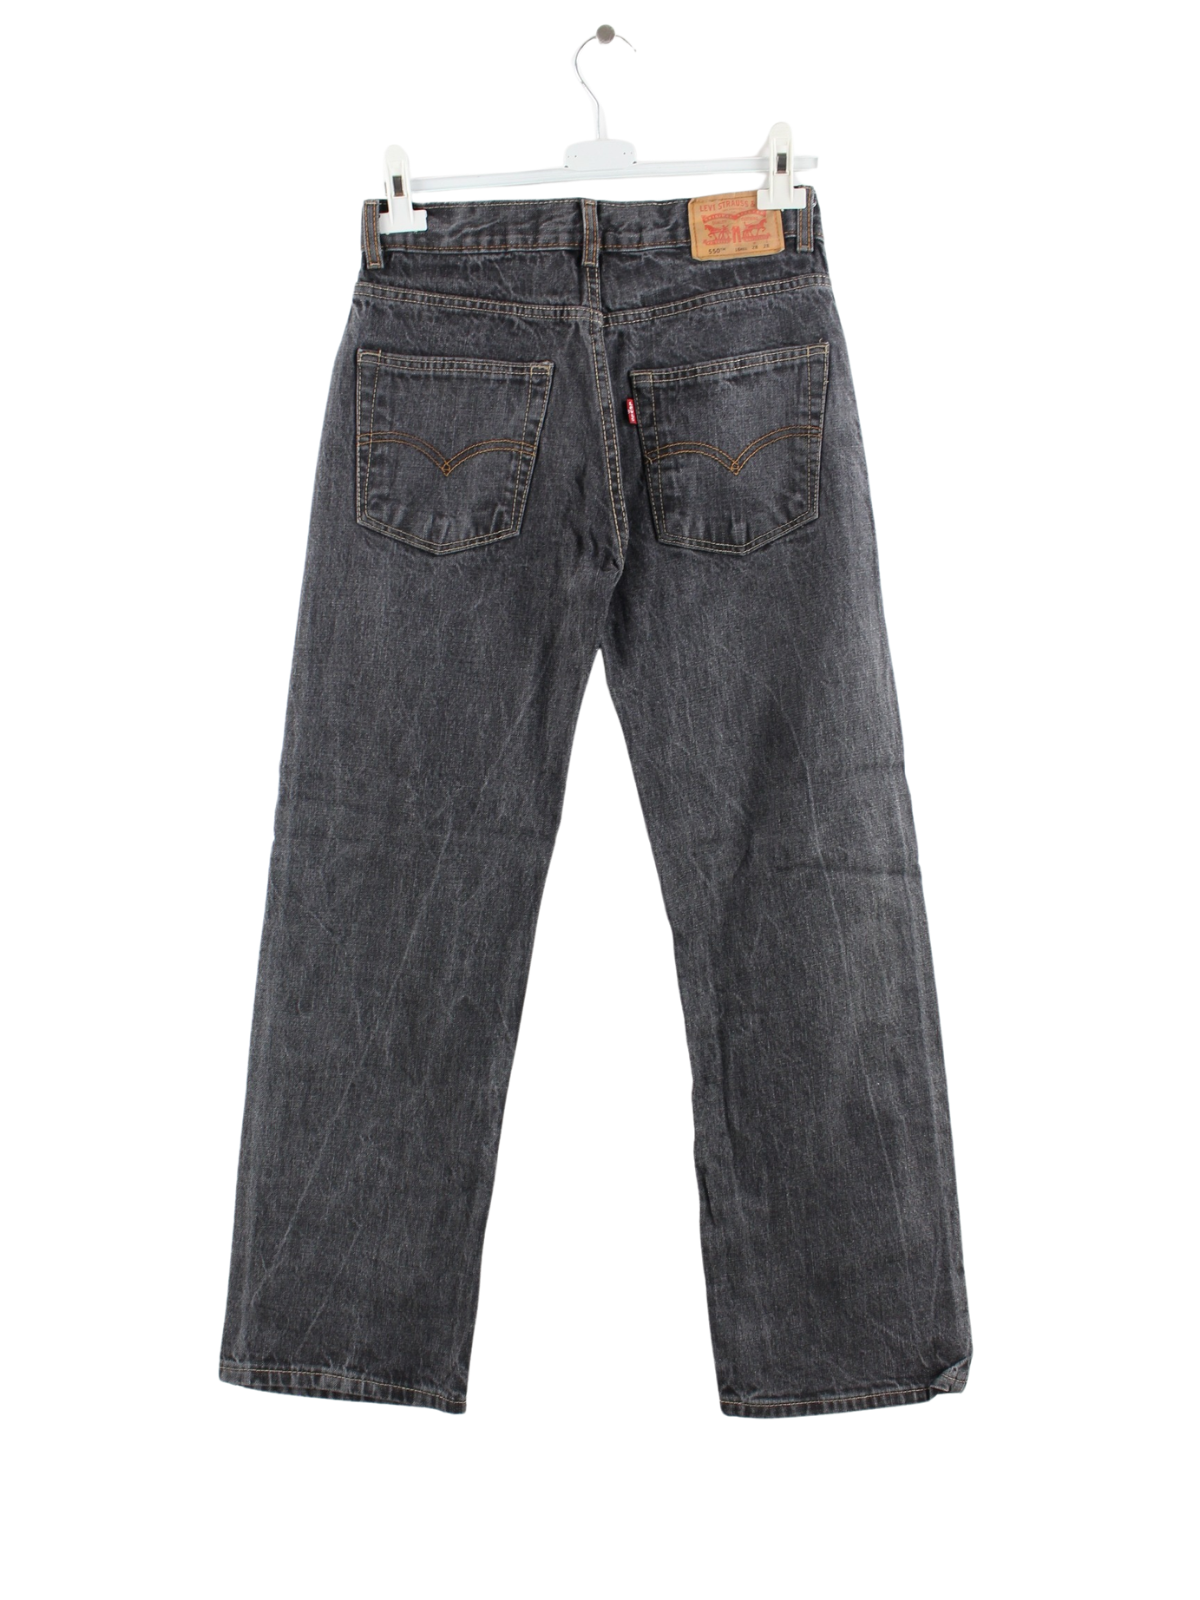 Levi's 550 Jeans Grau W28 L28